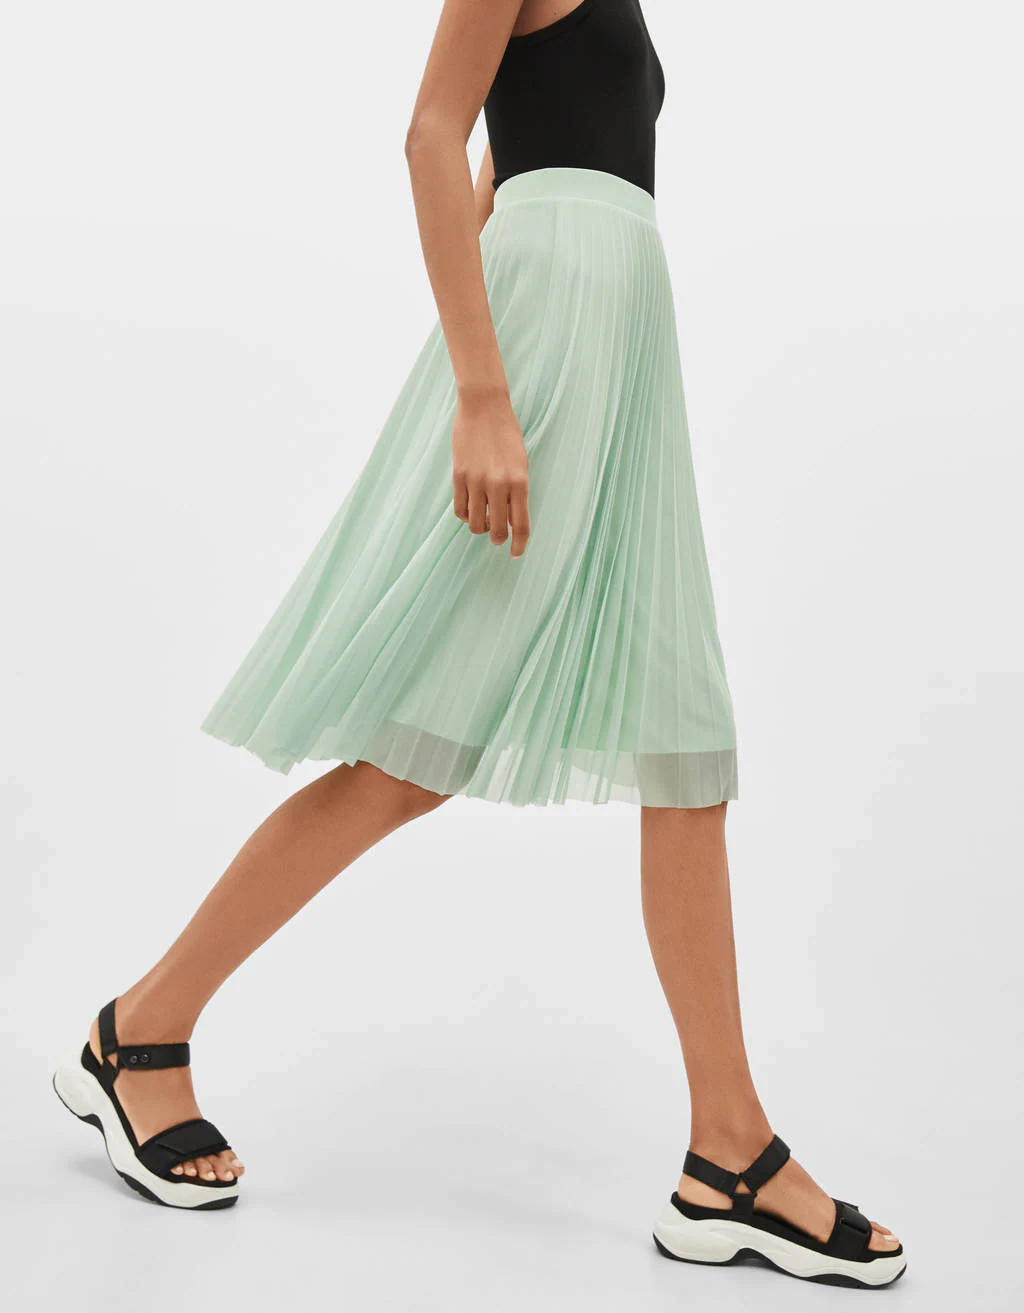 Cuyo Qué Pocos Fotos: Faldas mini y midi de nueva colección que hacen tipazo para quienes  no encuentran nada en las rebajas | Mujer Hoy